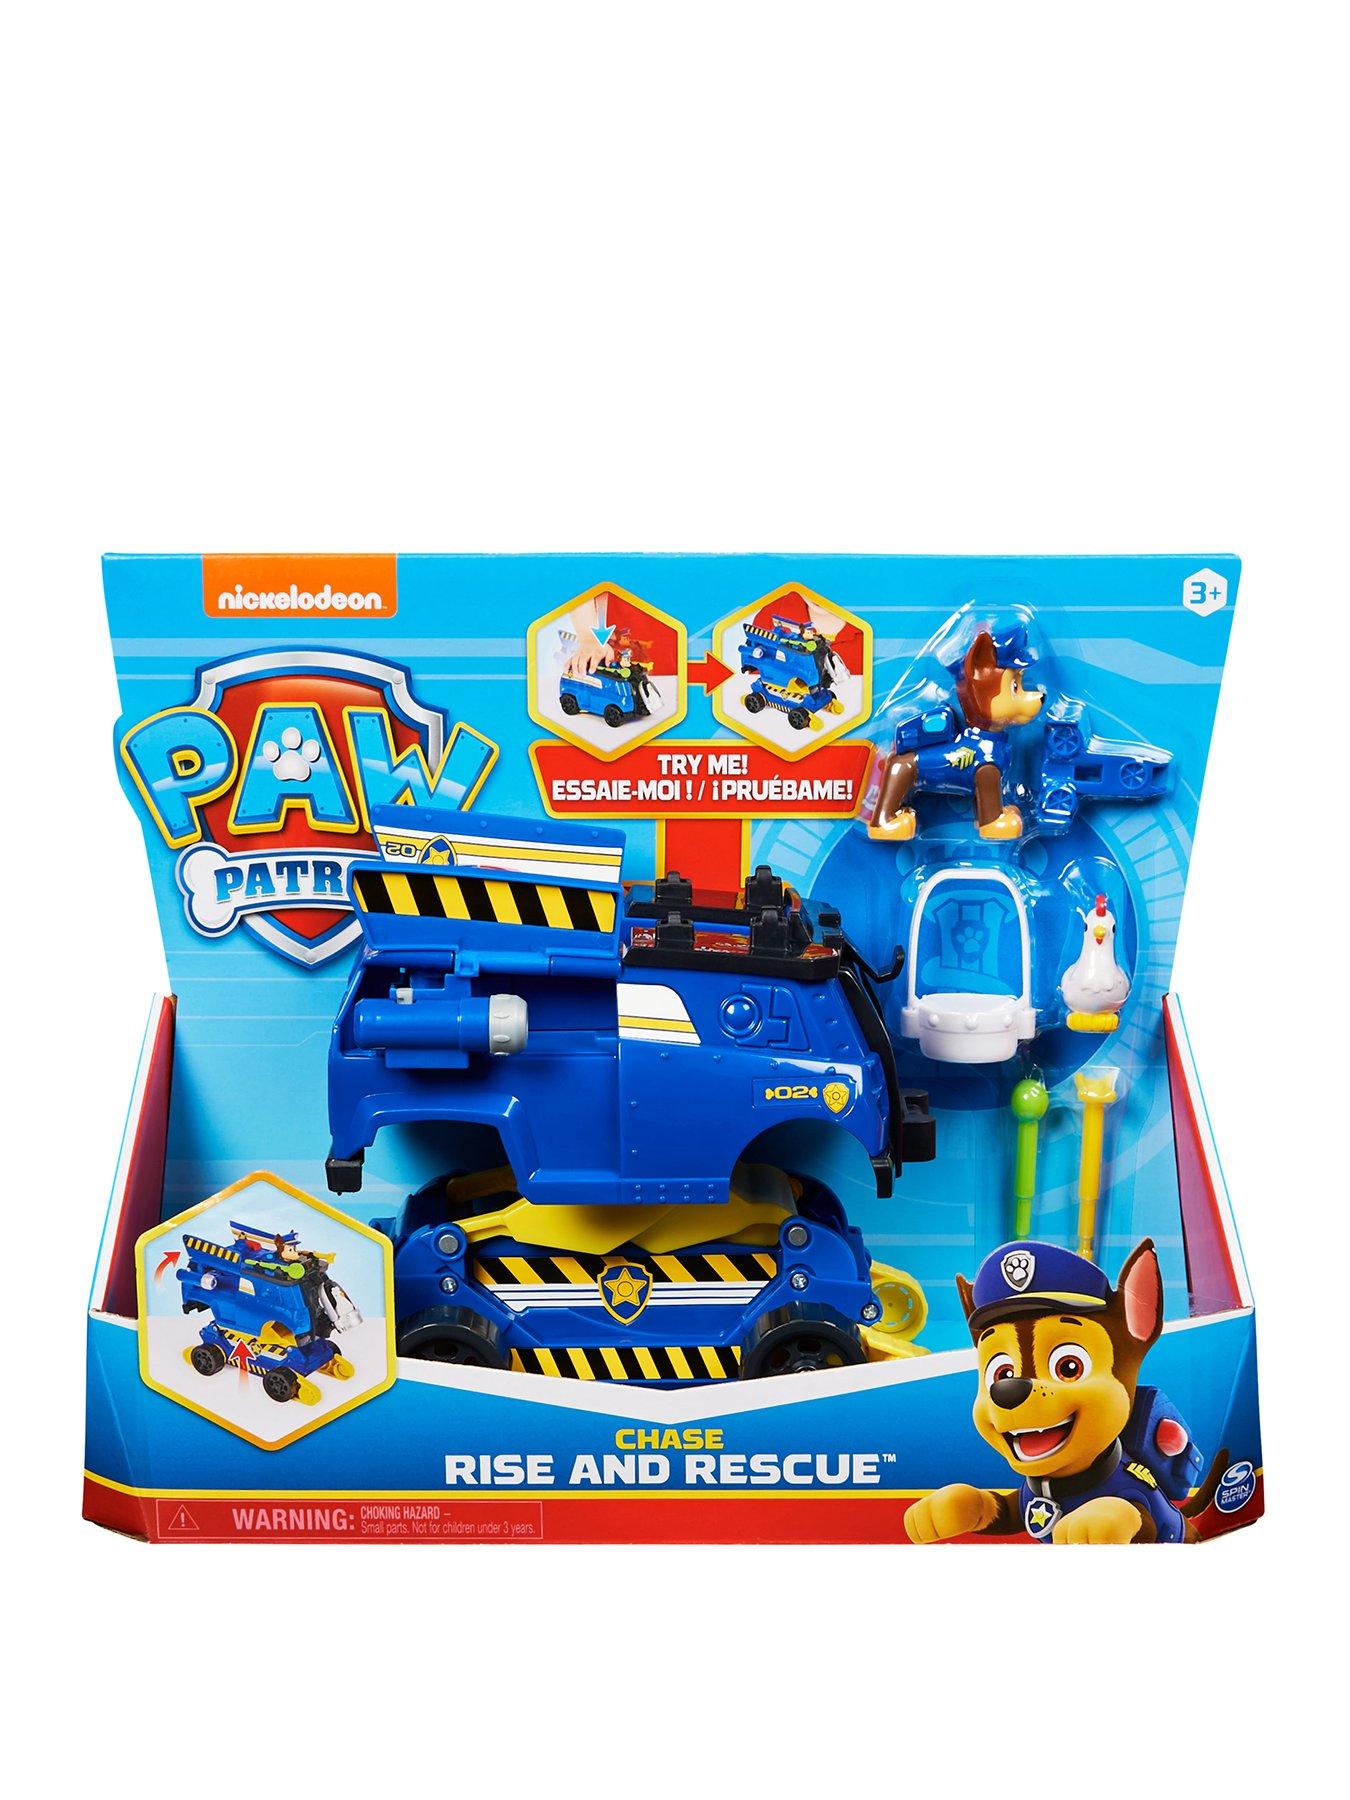 Sea Blue Nickelodeon Little Kids Paw Patrol Water Rescue Pack Sea Patrol Toy 